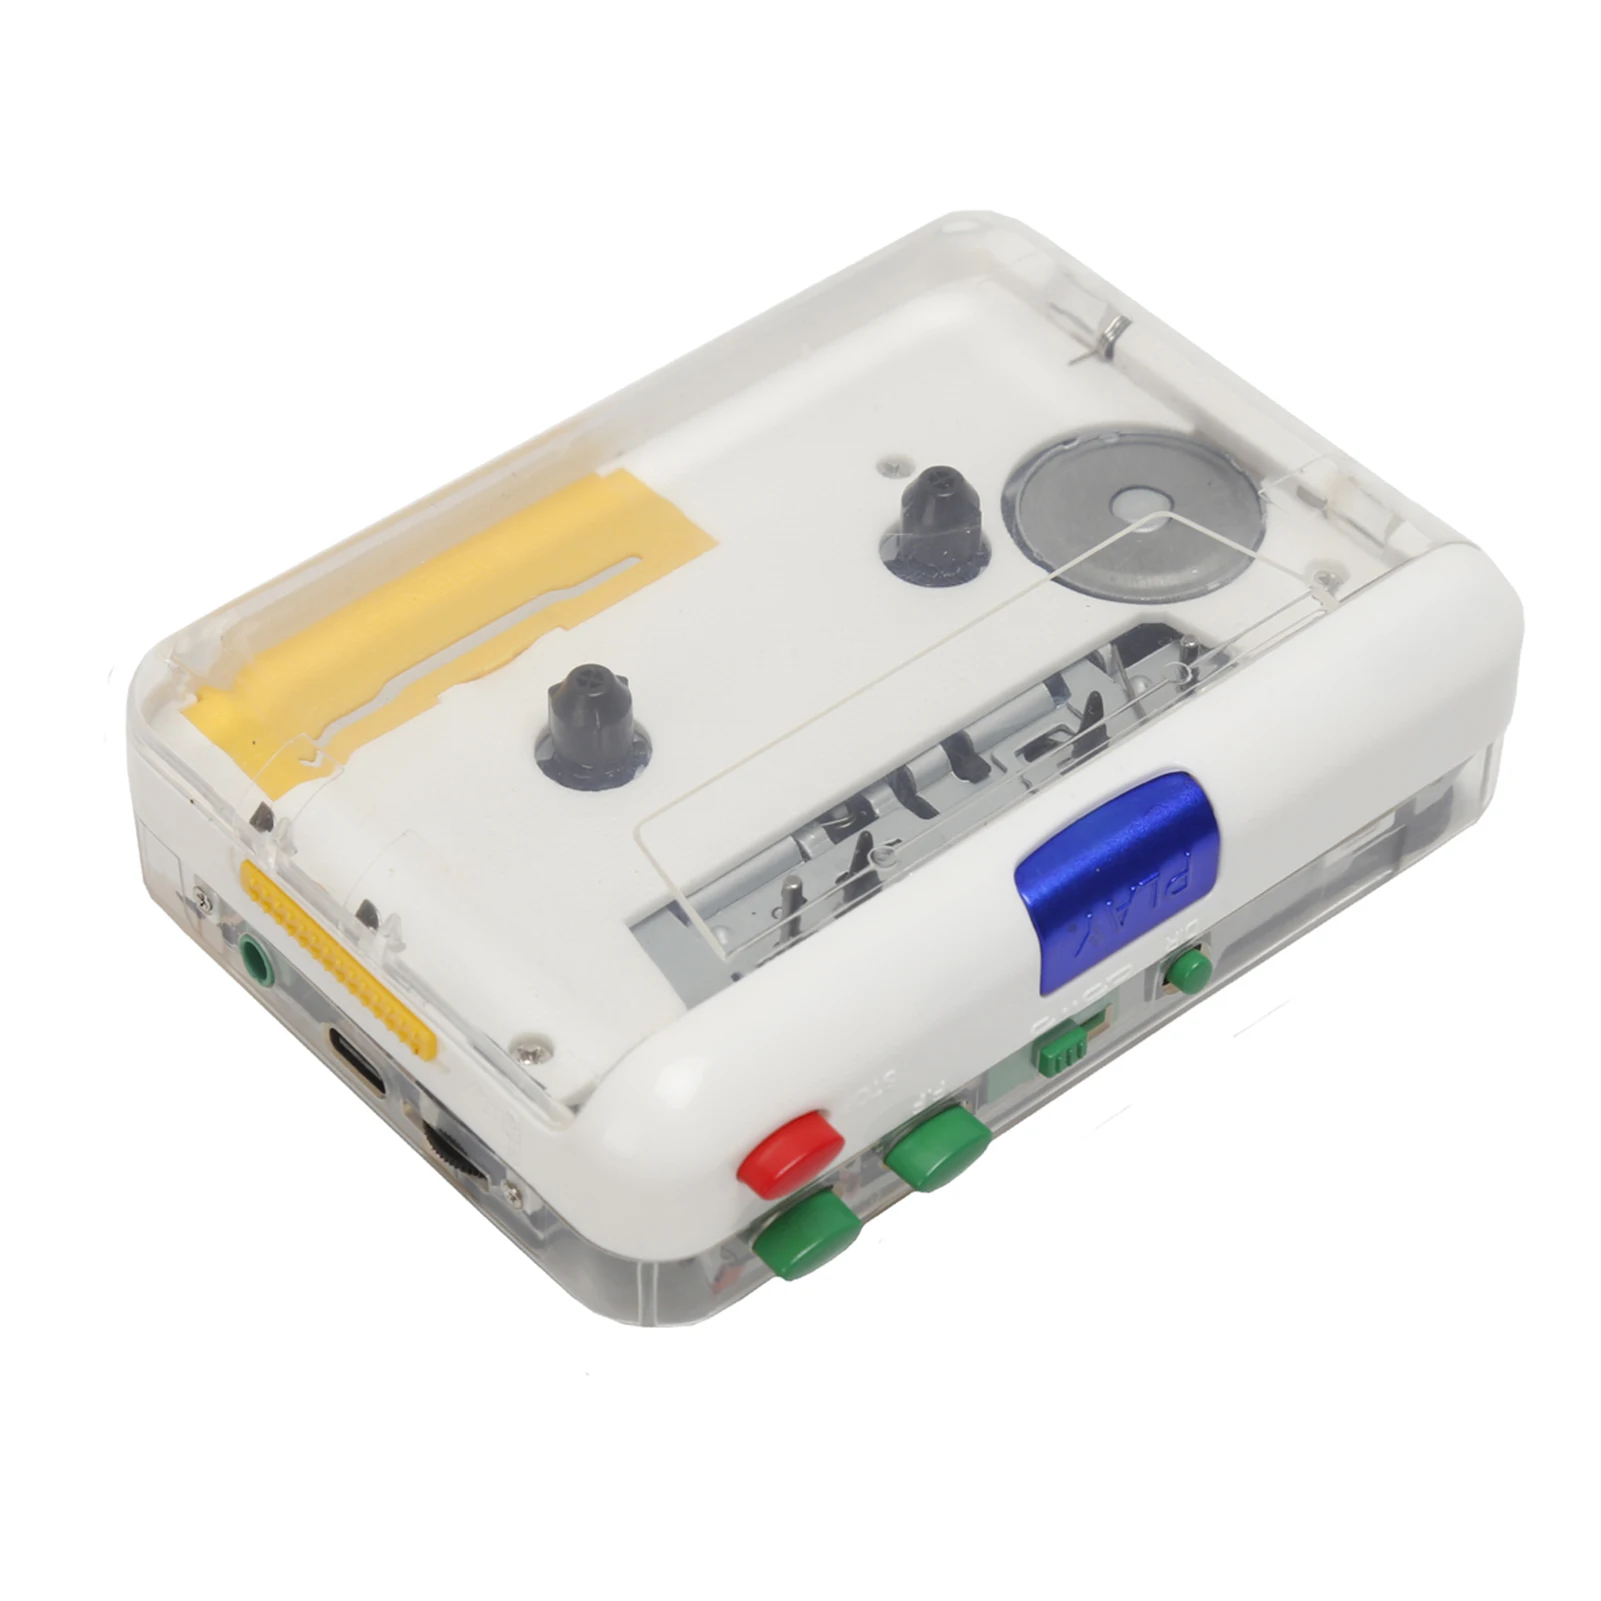 Портативный кассетный MP3-плеер TON010S с мини-USB-магнитофоном и MP3-конвертером с 3,5-мм входом AUX; CD-кассета с программным обеспечением